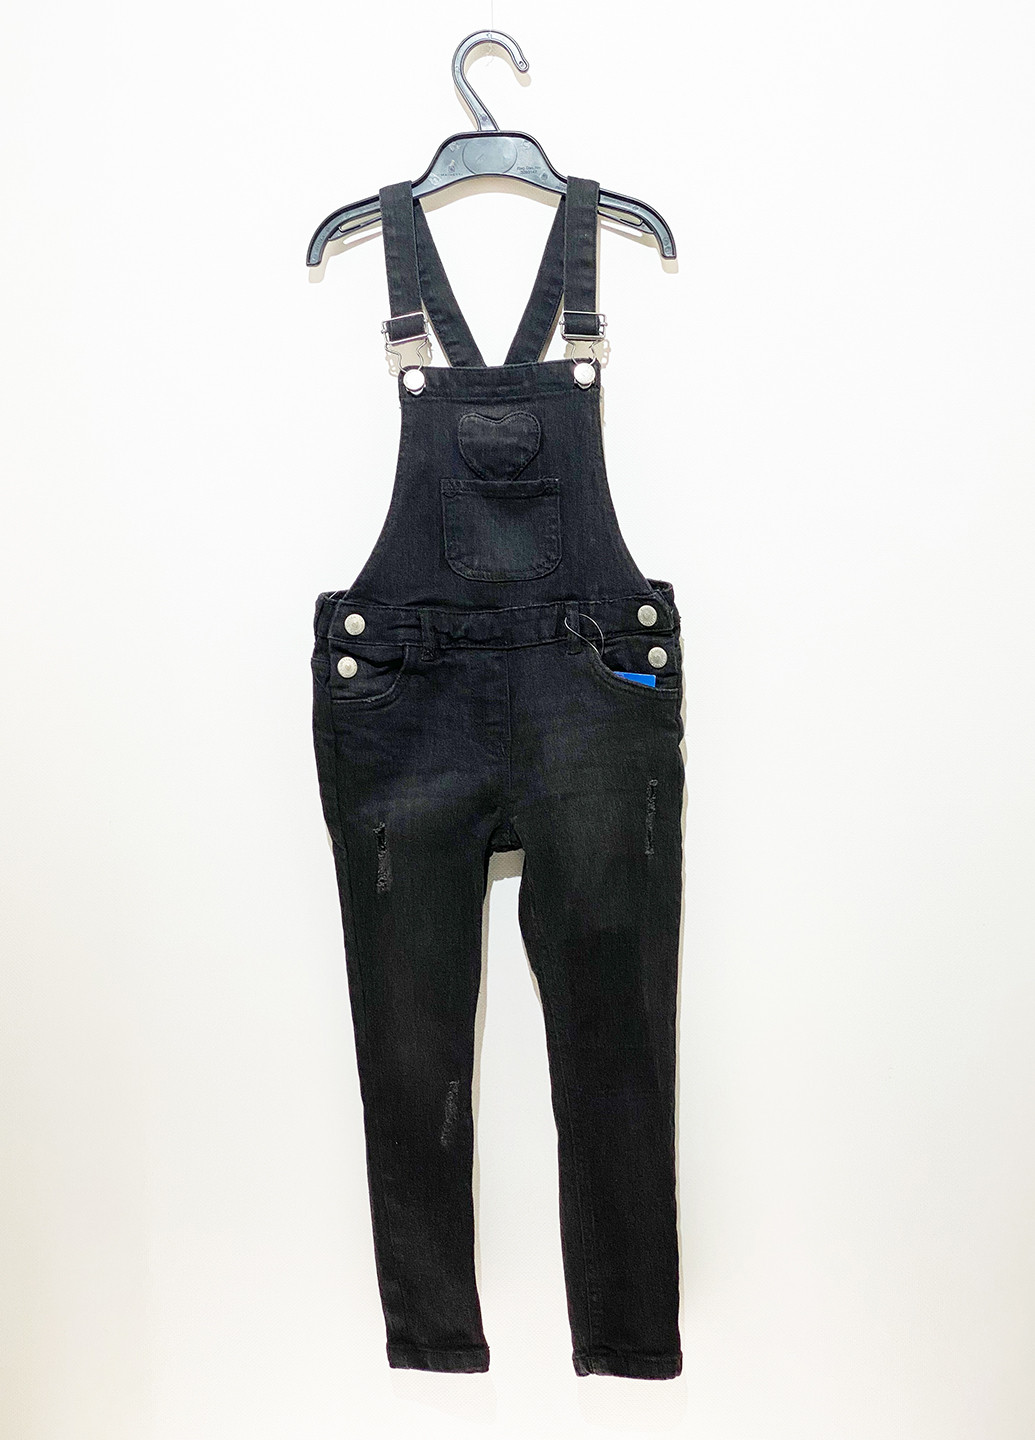 Комбинезон Lupilu комбинезон-брюки однотонный серый джинсовый хлопок